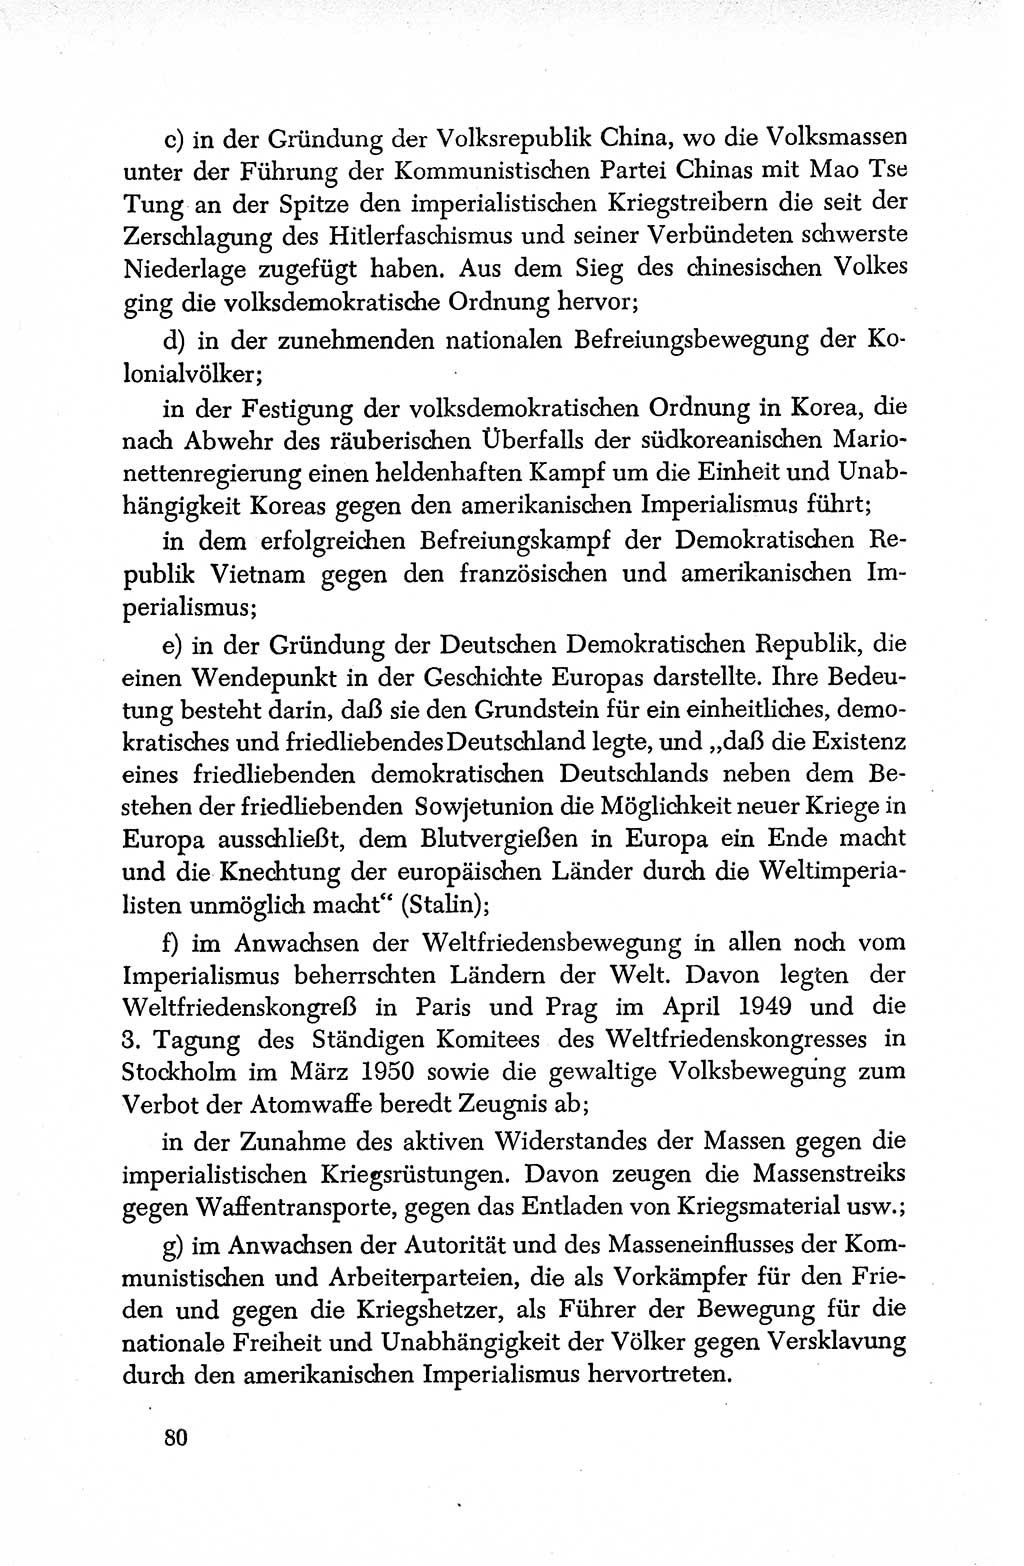 Dokumente der Sozialistischen Einheitspartei Deutschlands (SED) [Deutsche Demokratische Republik (DDR)] 1950-1952, Seite 80 (Dok. SED DDR 1950-1952, S. 80)